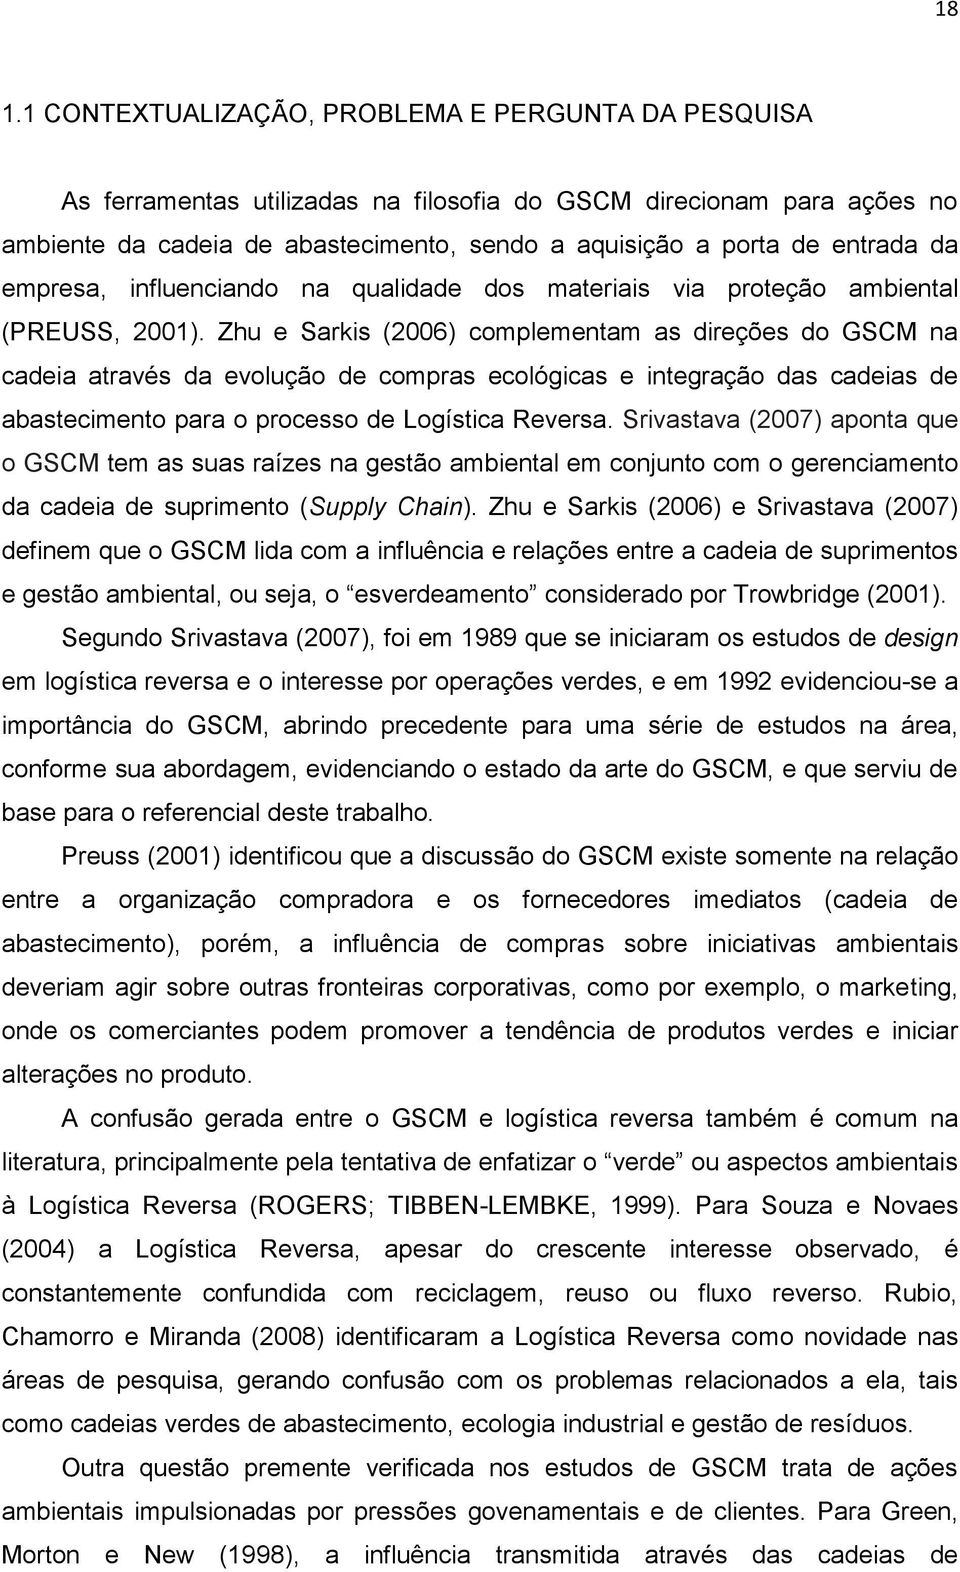 Zhu e Sarkis (2006) complementam as direções do GSCM na cadeia através da evolução de compras ecológicas e integração das cadeias de abastecimento para o processo de Logística Reversa.